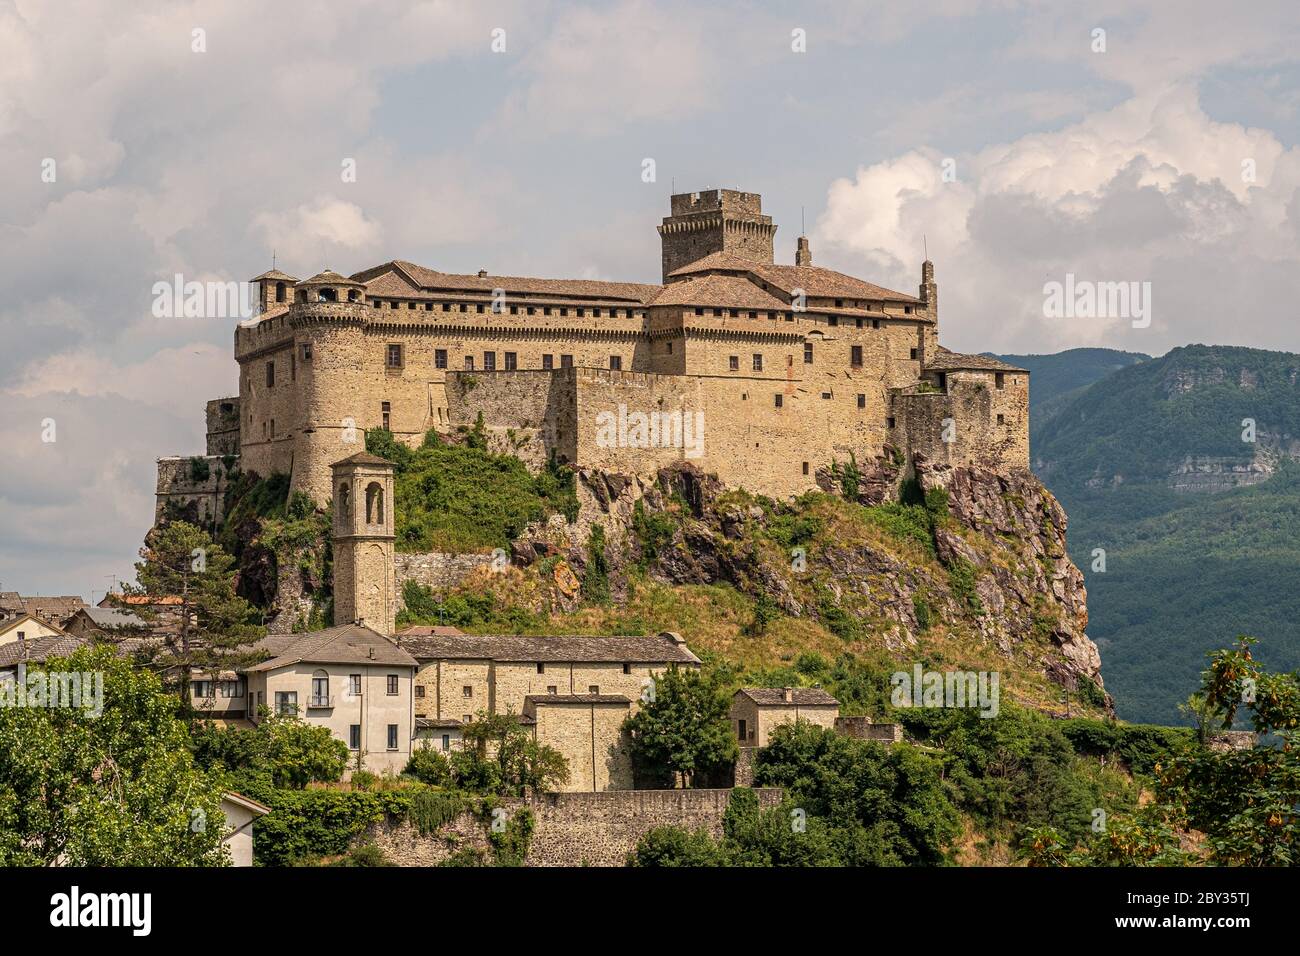 Le château de Bardi dans un jour nuageux. Province de Parme, Emilie-Romagne, Italie. Banque D'Images